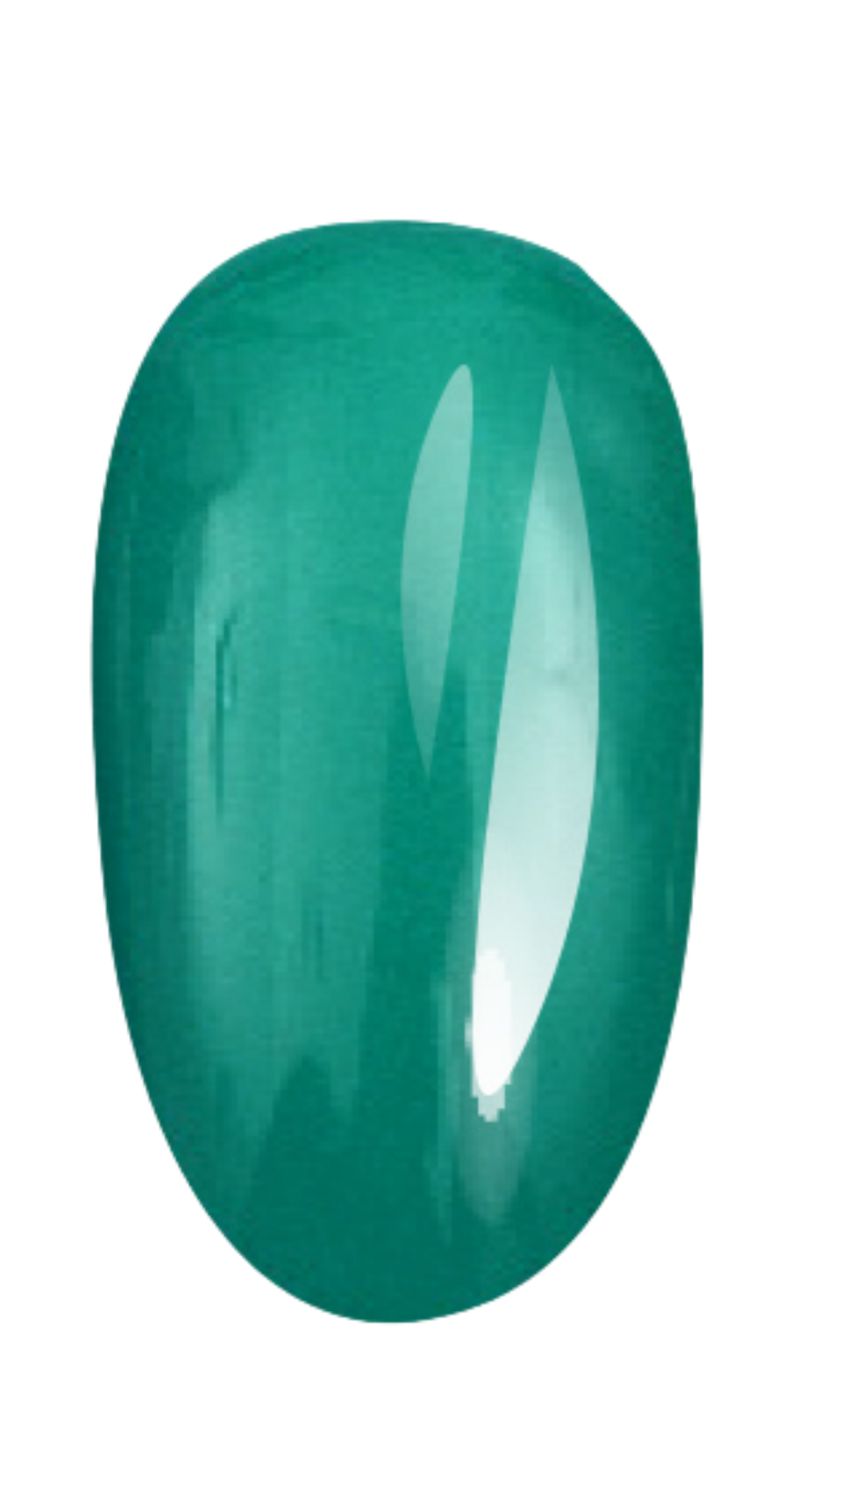 E.MiLac Turquoise #034, 9 ml.